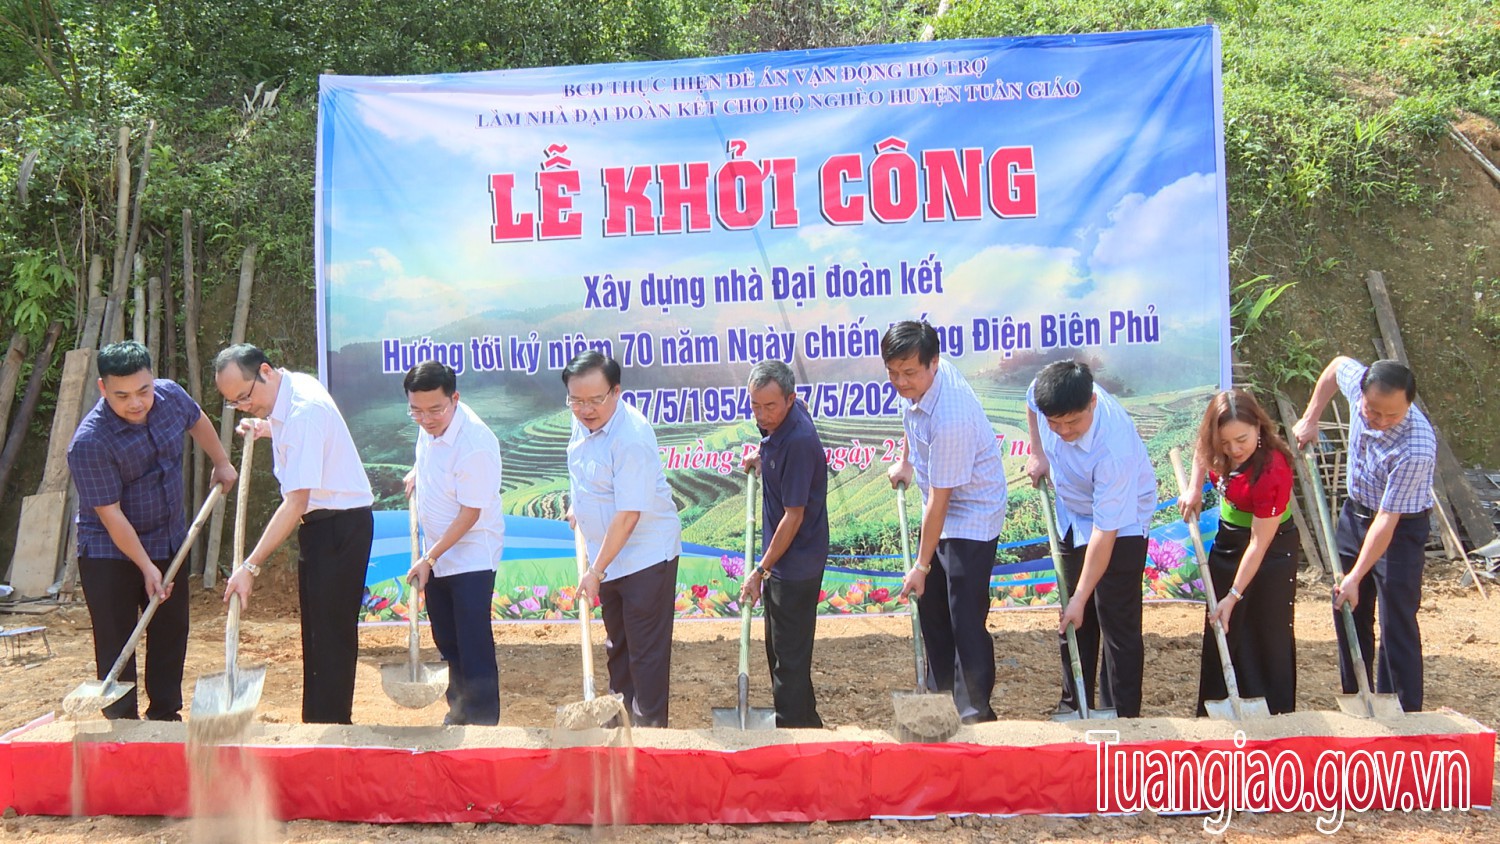 Lễ khởi công xây dựng nhà Đại đoàn kết cho hộ nghèo huyện Tuần Giáo hướng tới kỉ niệm 70 năm chiến thắng Điện Biên Phủ